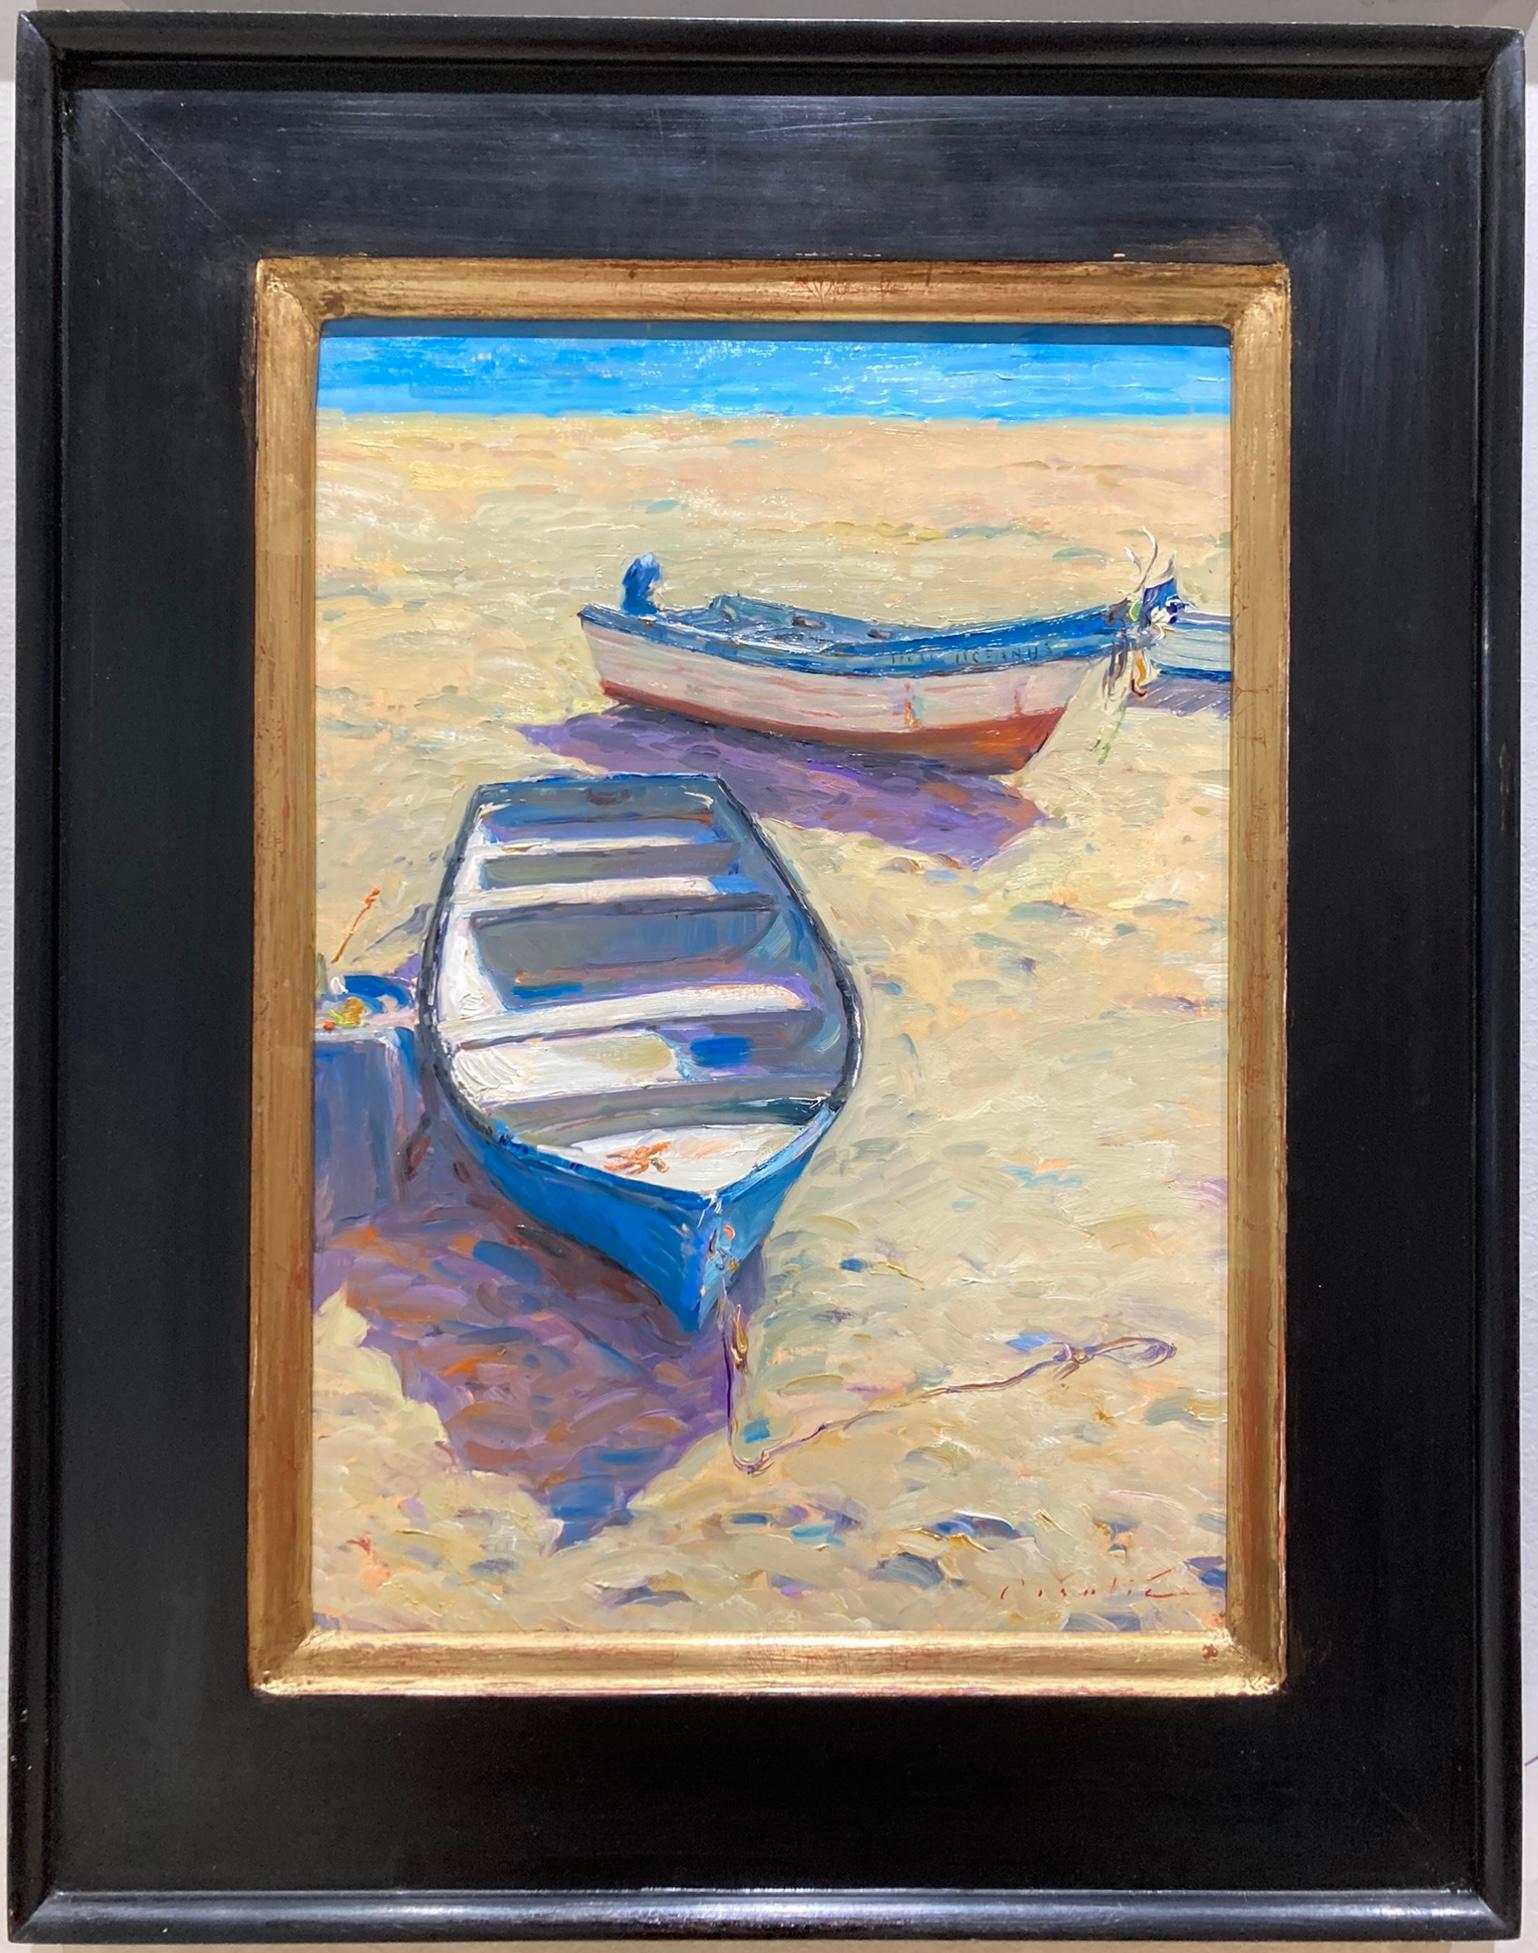 Fischerboote, Salema – Painting von Tina Orsolic Dalessio